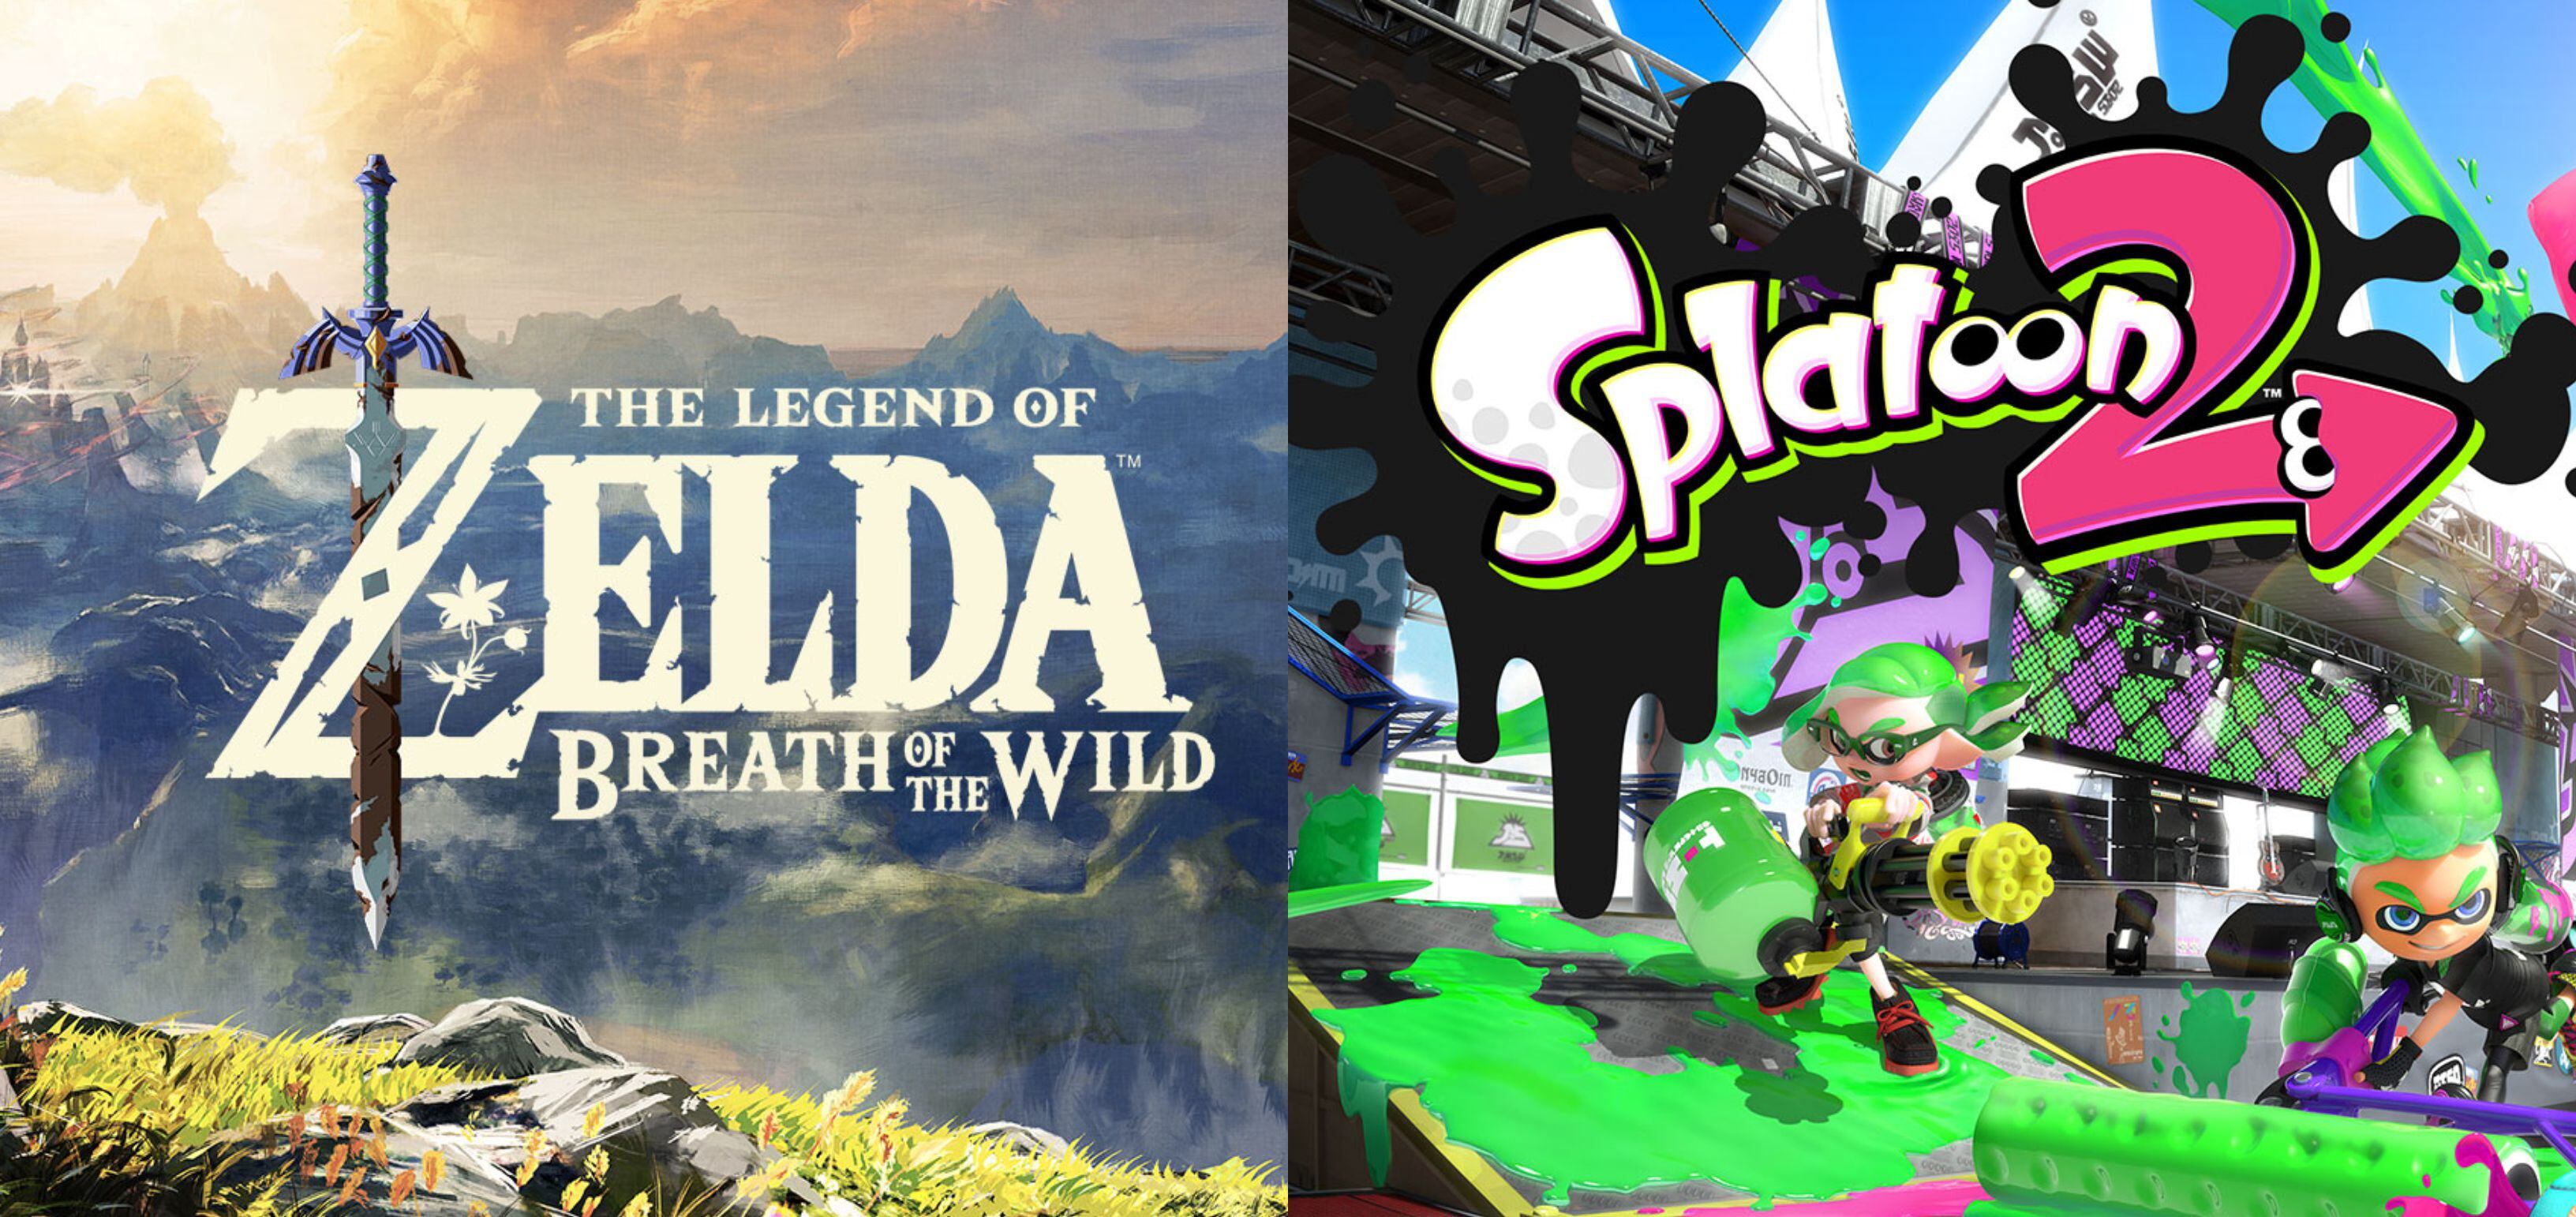 Videojuegos insignias de Nintendo como The Legend of Zelda:Breath of the Wild y Splatoon 2 tienen un gran descuento en estos días cercanos al Black Friday.